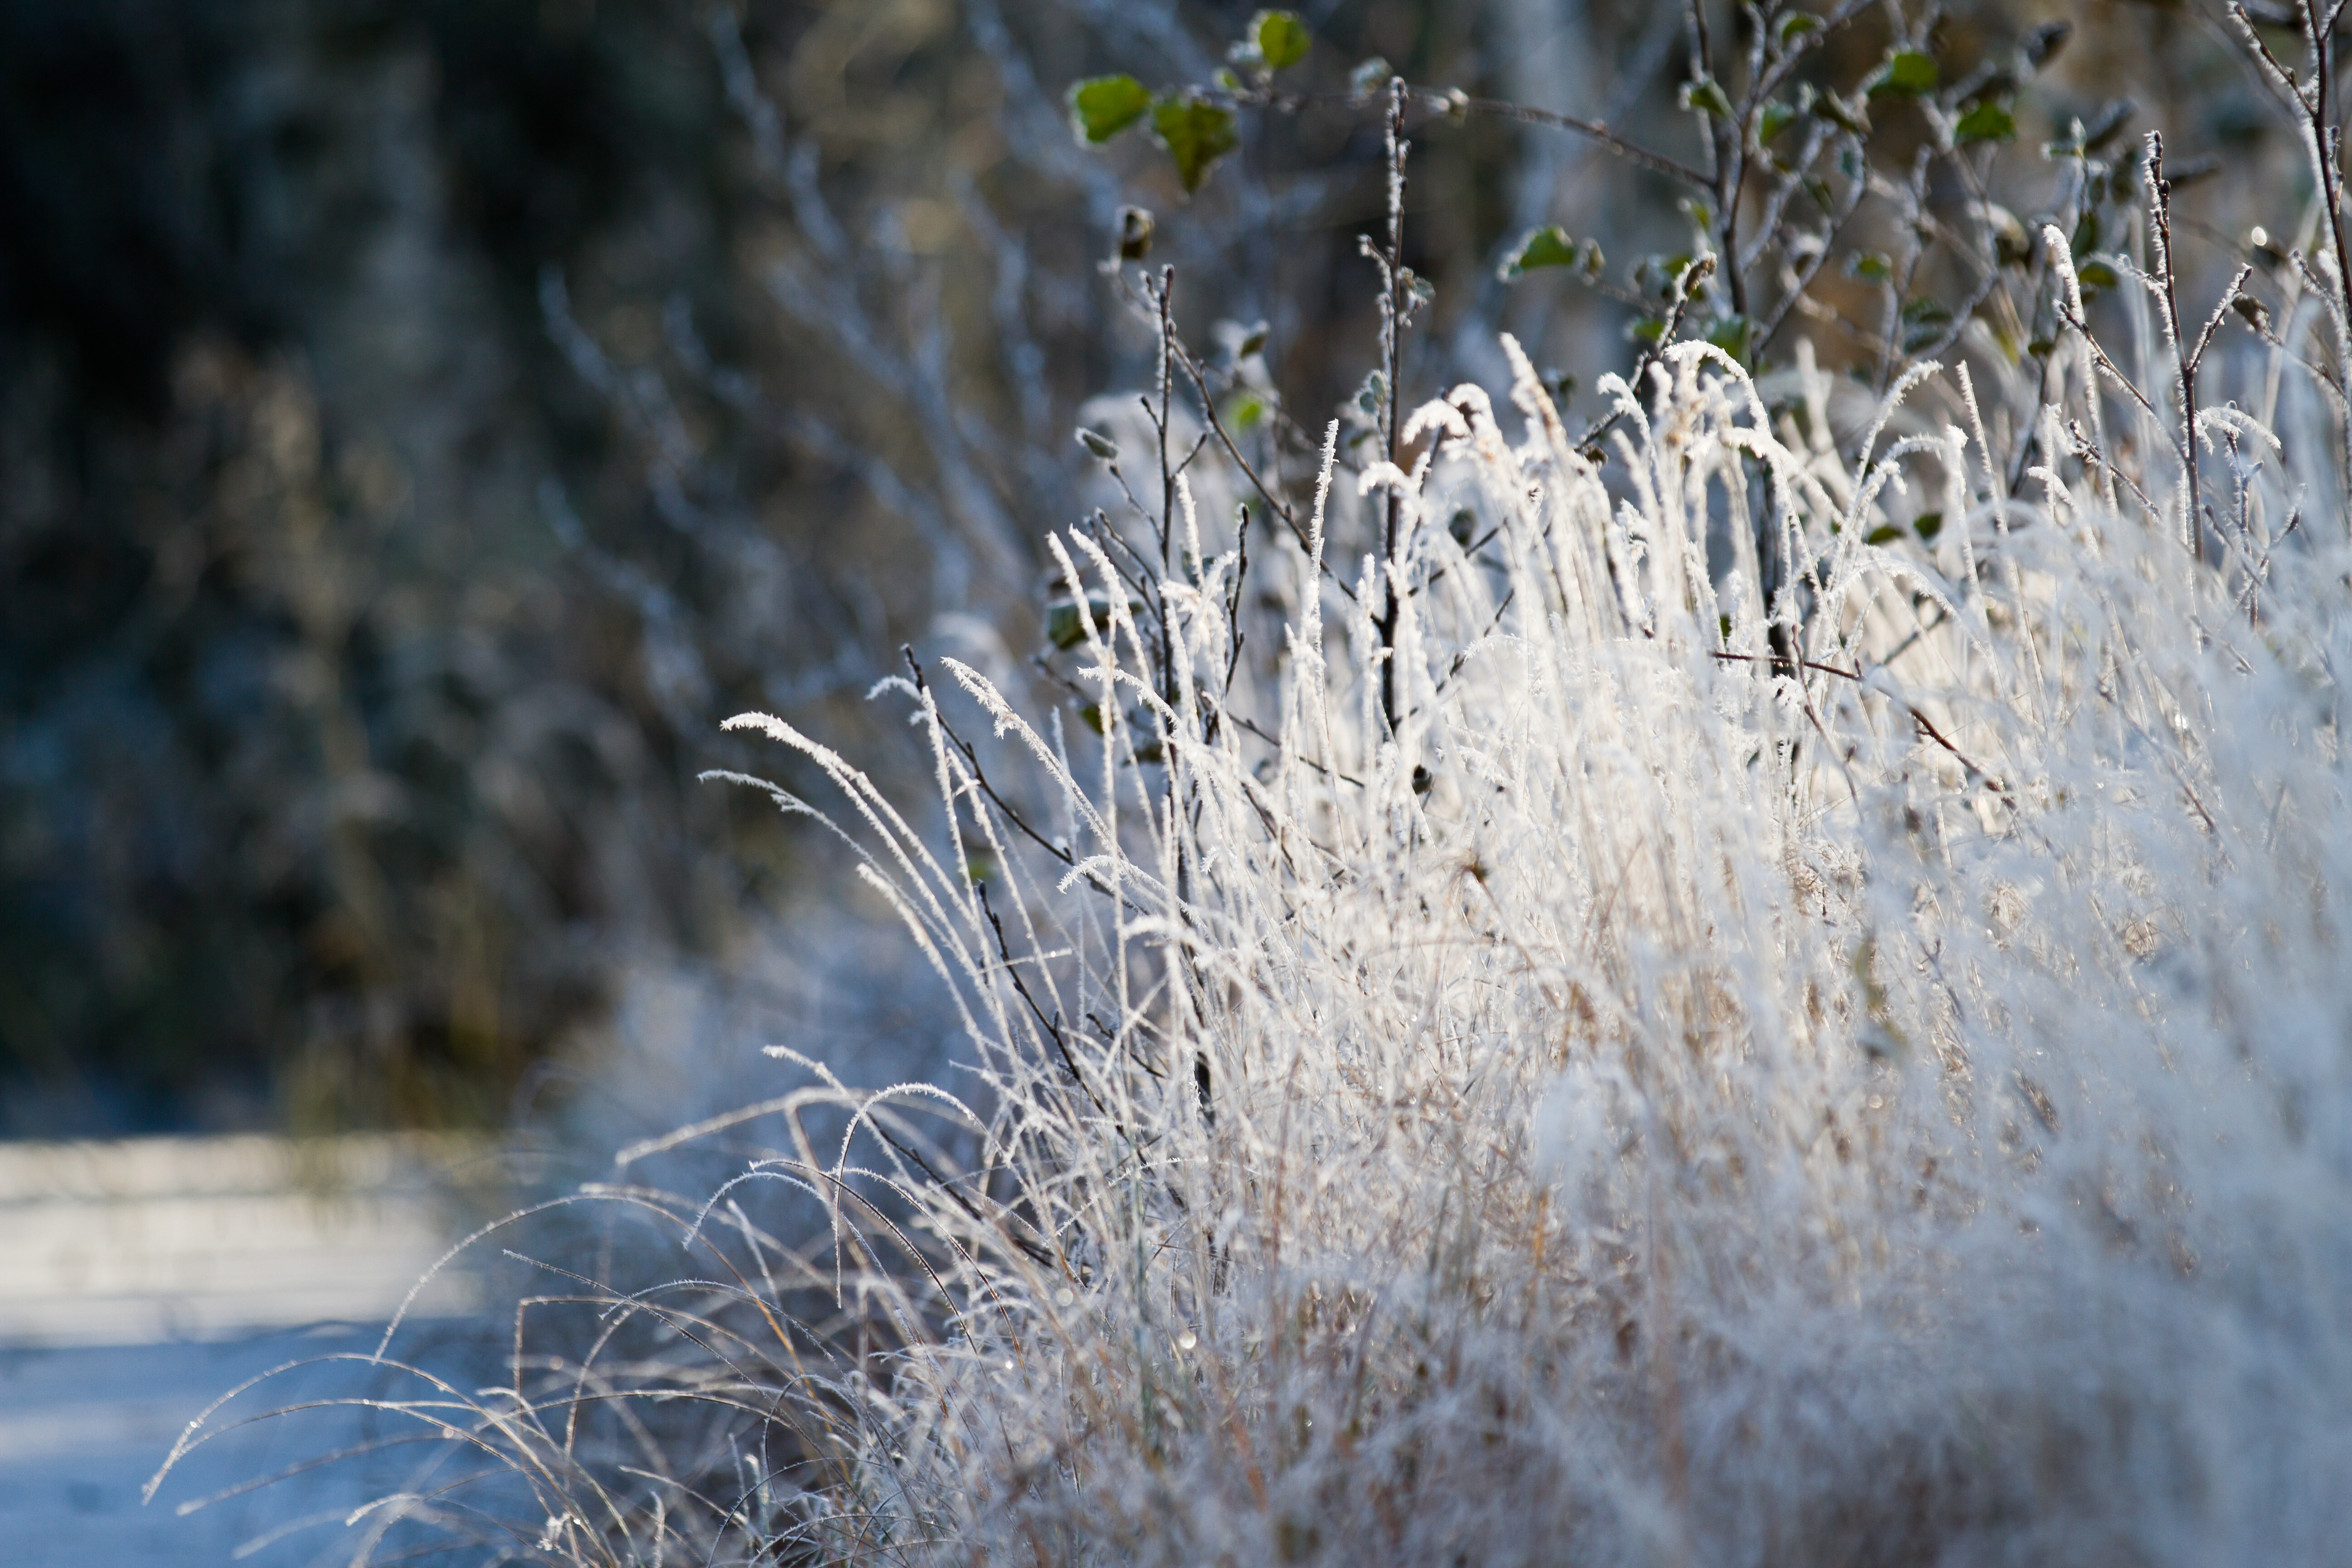 Frozen grass by BIREL on DeviantArt